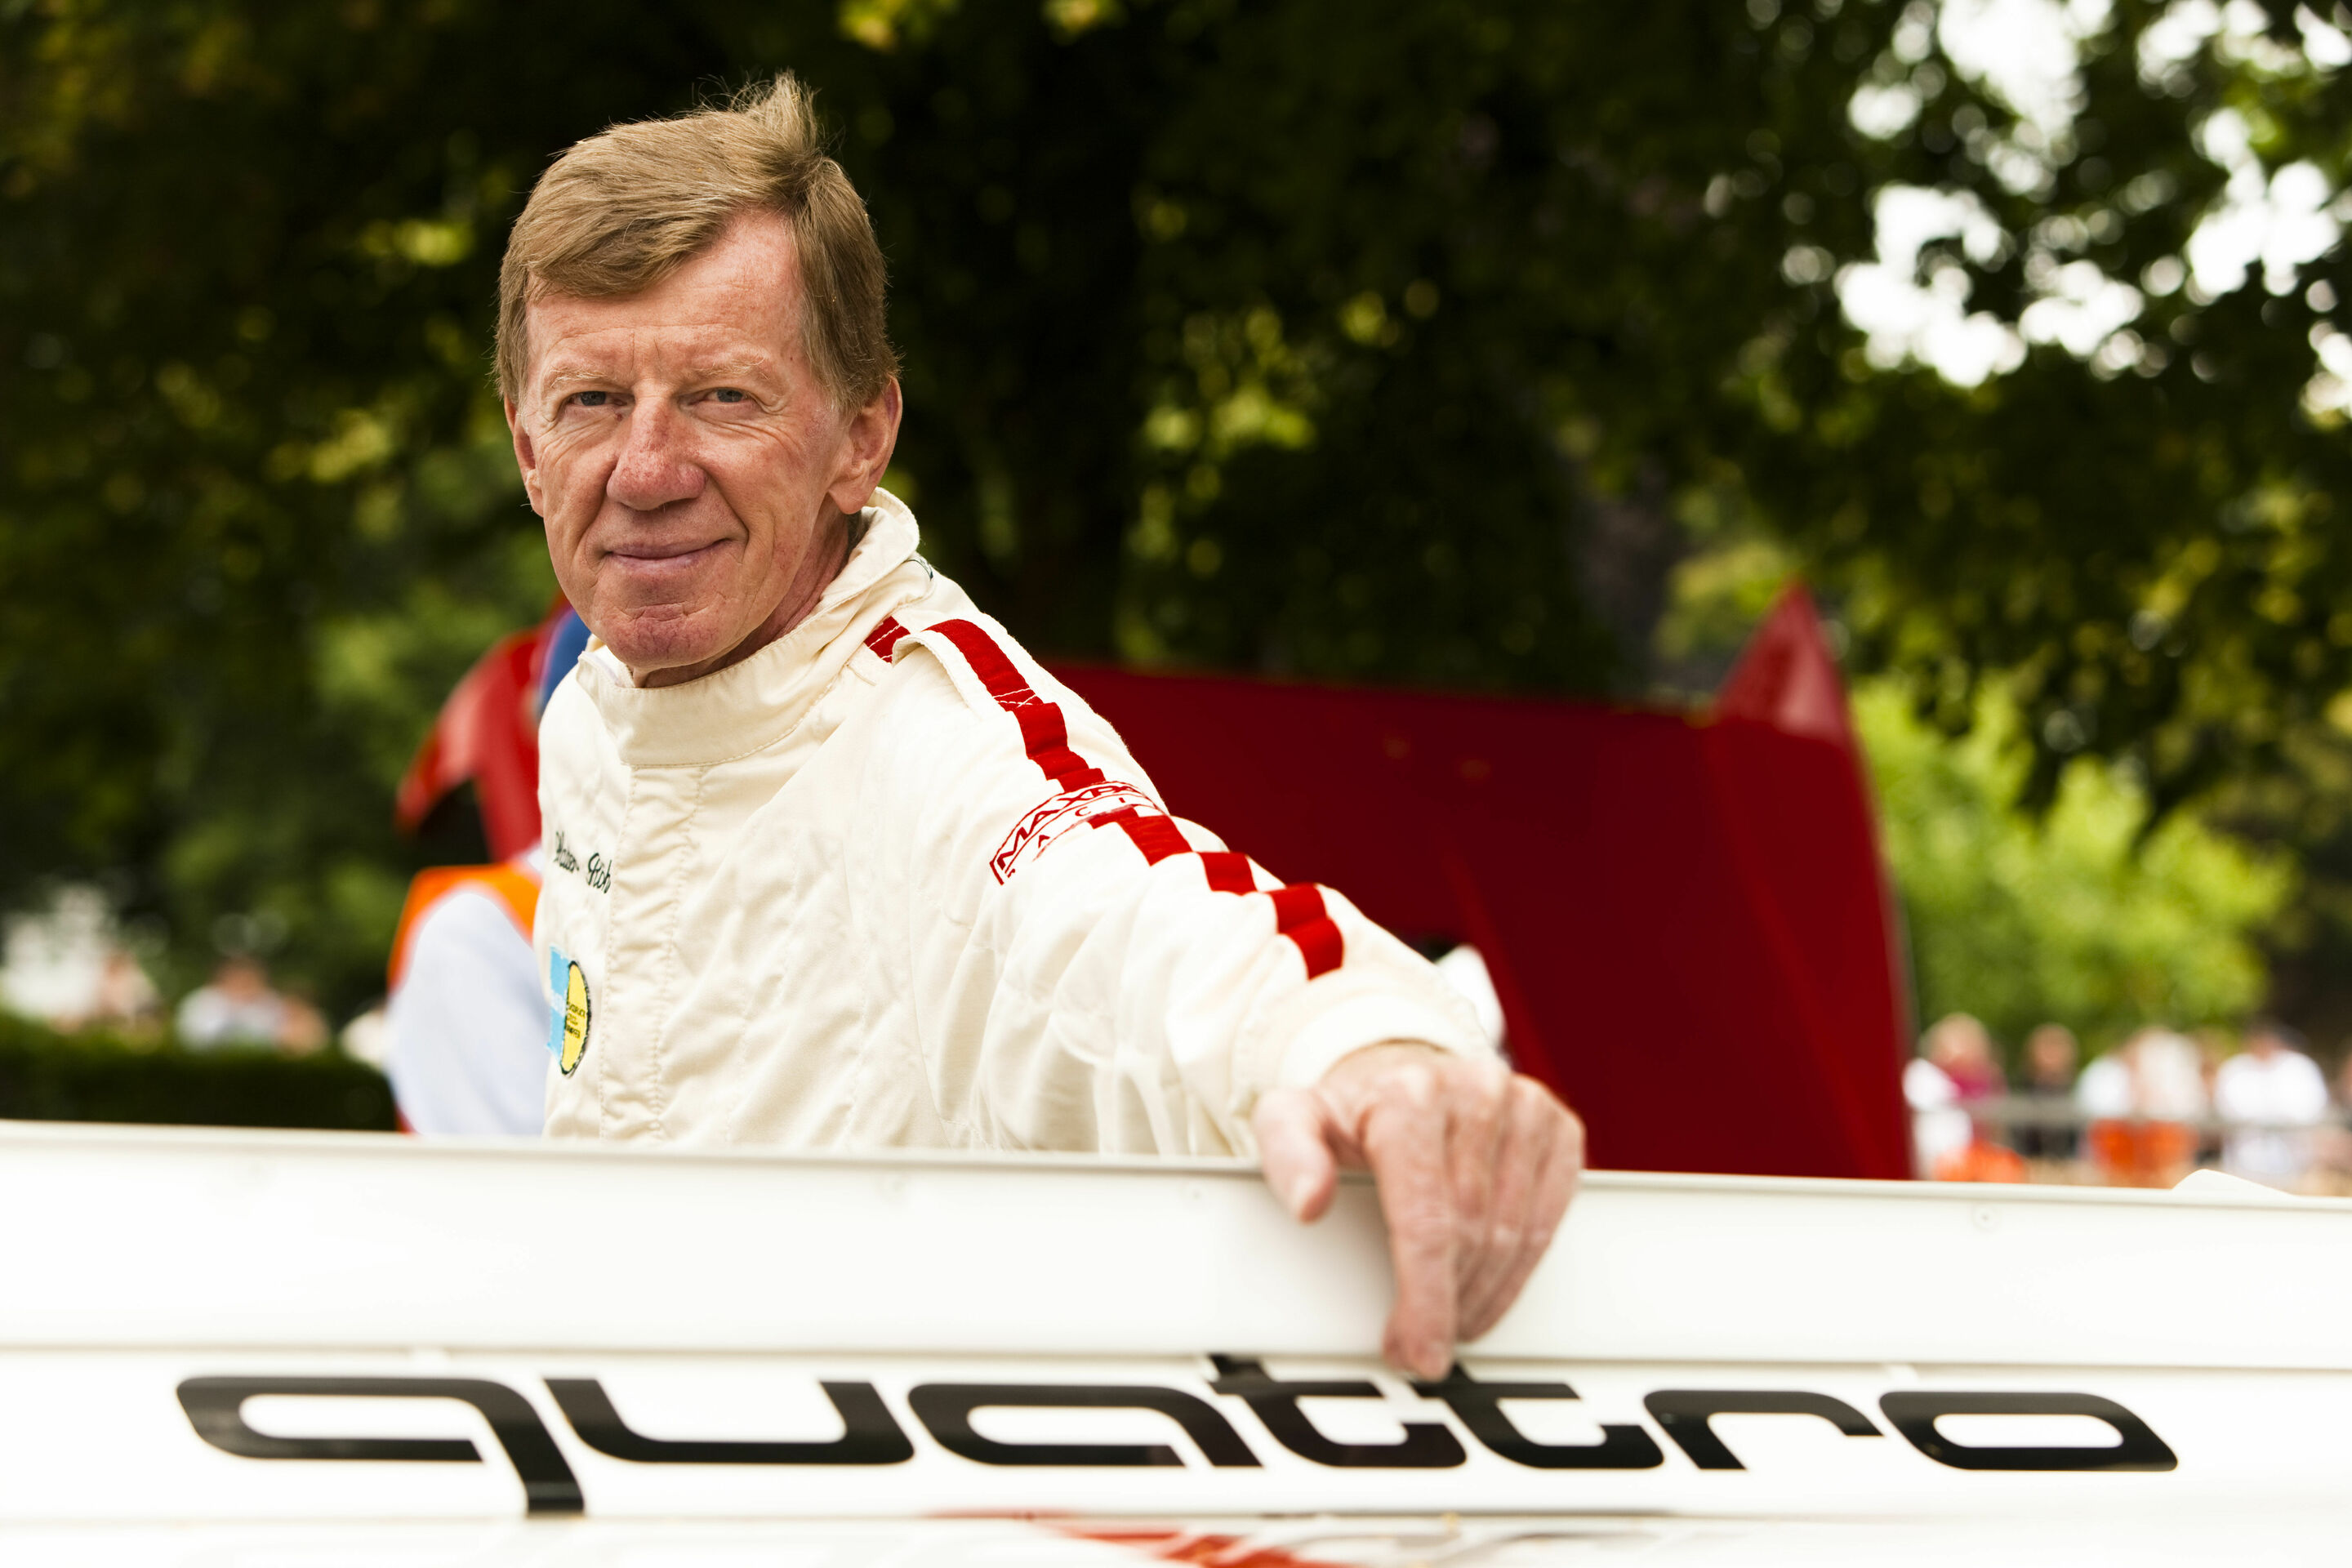 Rallye-Revival: Fahrerlegende Walter Röhrl legt einen Zwischenstopp am Audi Forum Neckarsulm ein